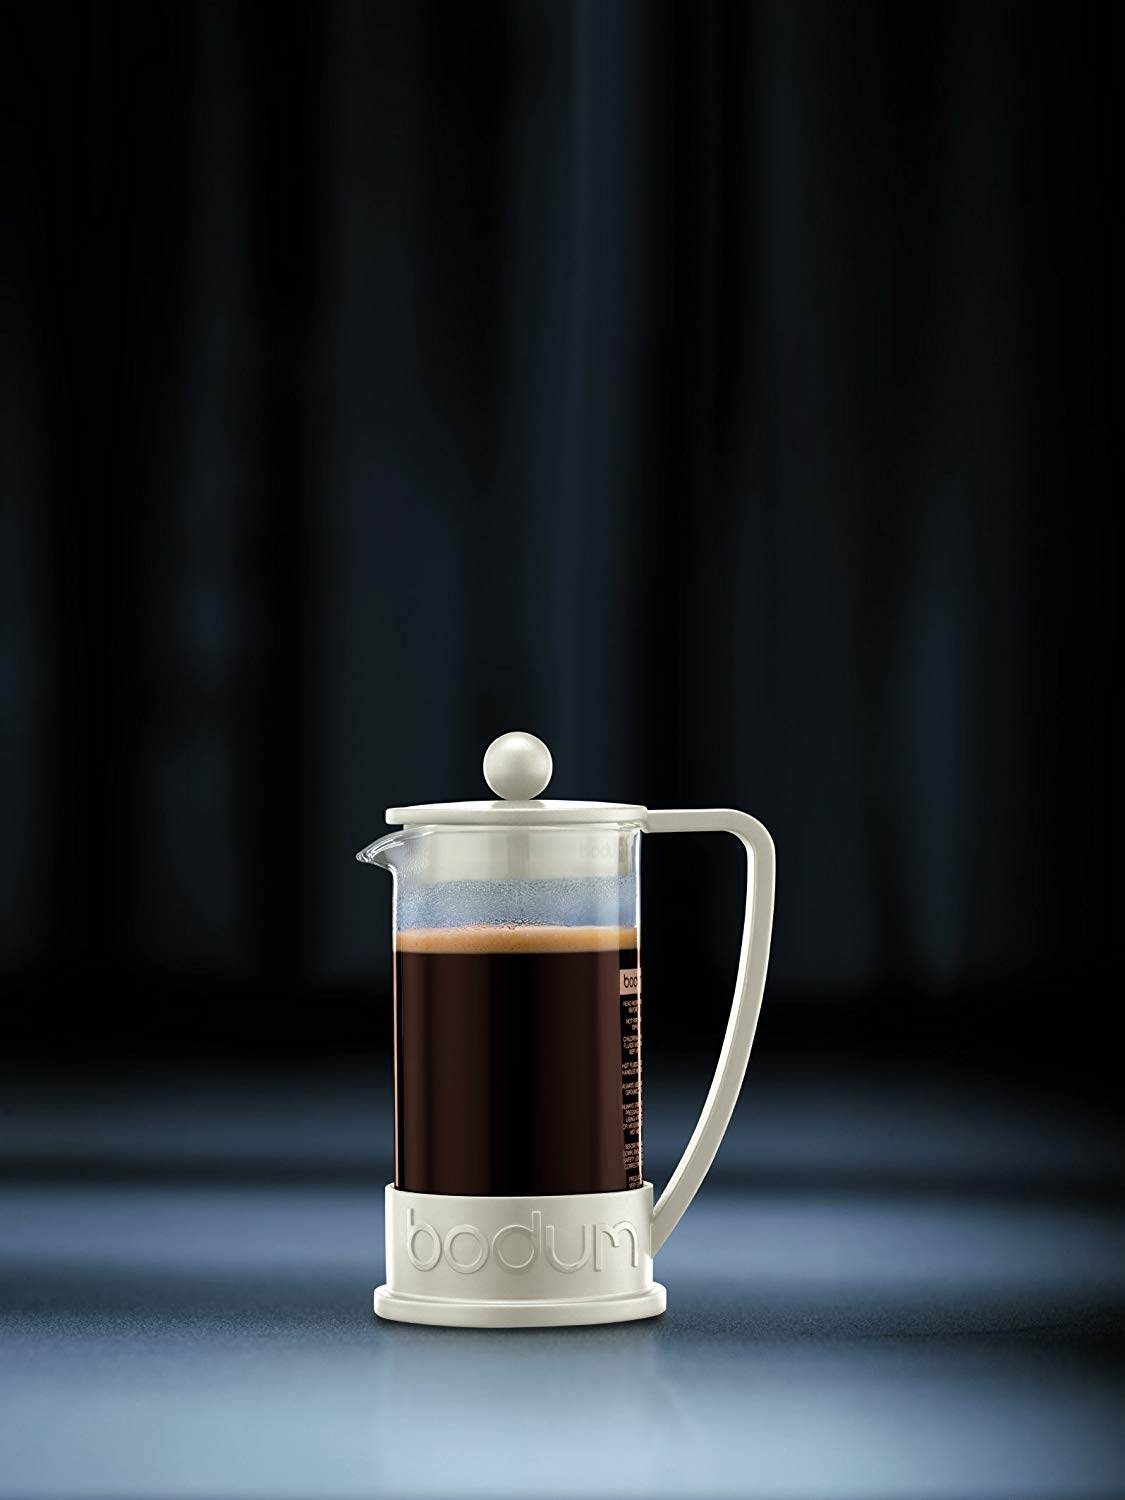 Bodum Brazil Coffee Press, 8 Cup, 1.0 L/34 Oz - White